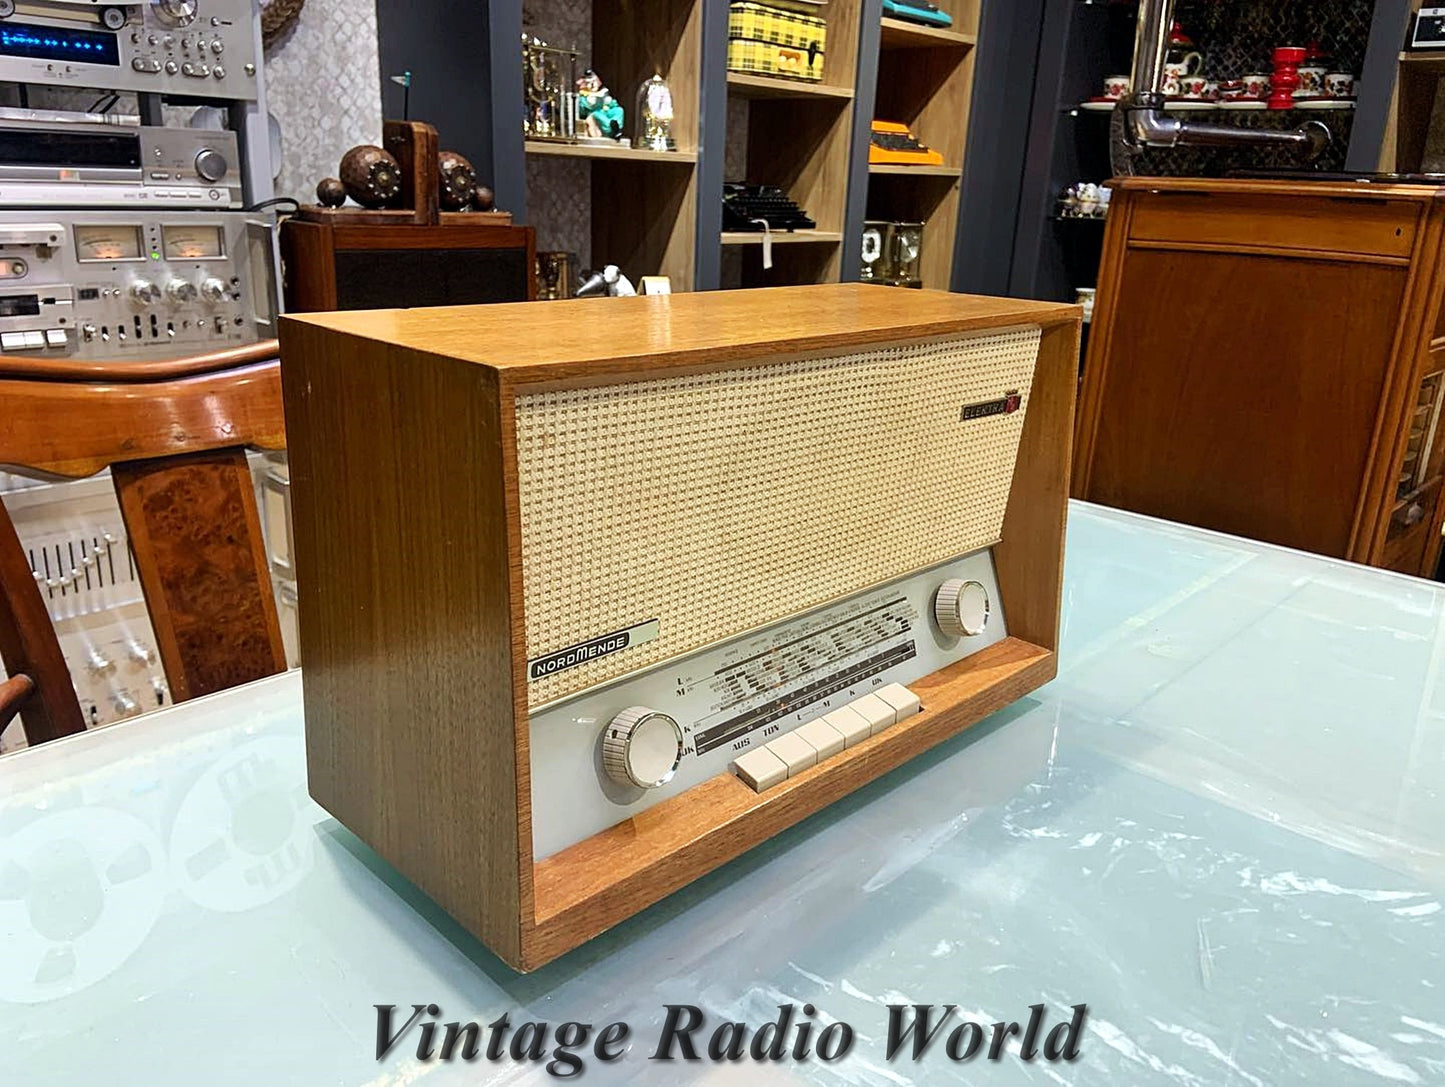 Nordmende Elektra Vintage Radio: A Symphony of Antique Elegance and Timeless Design